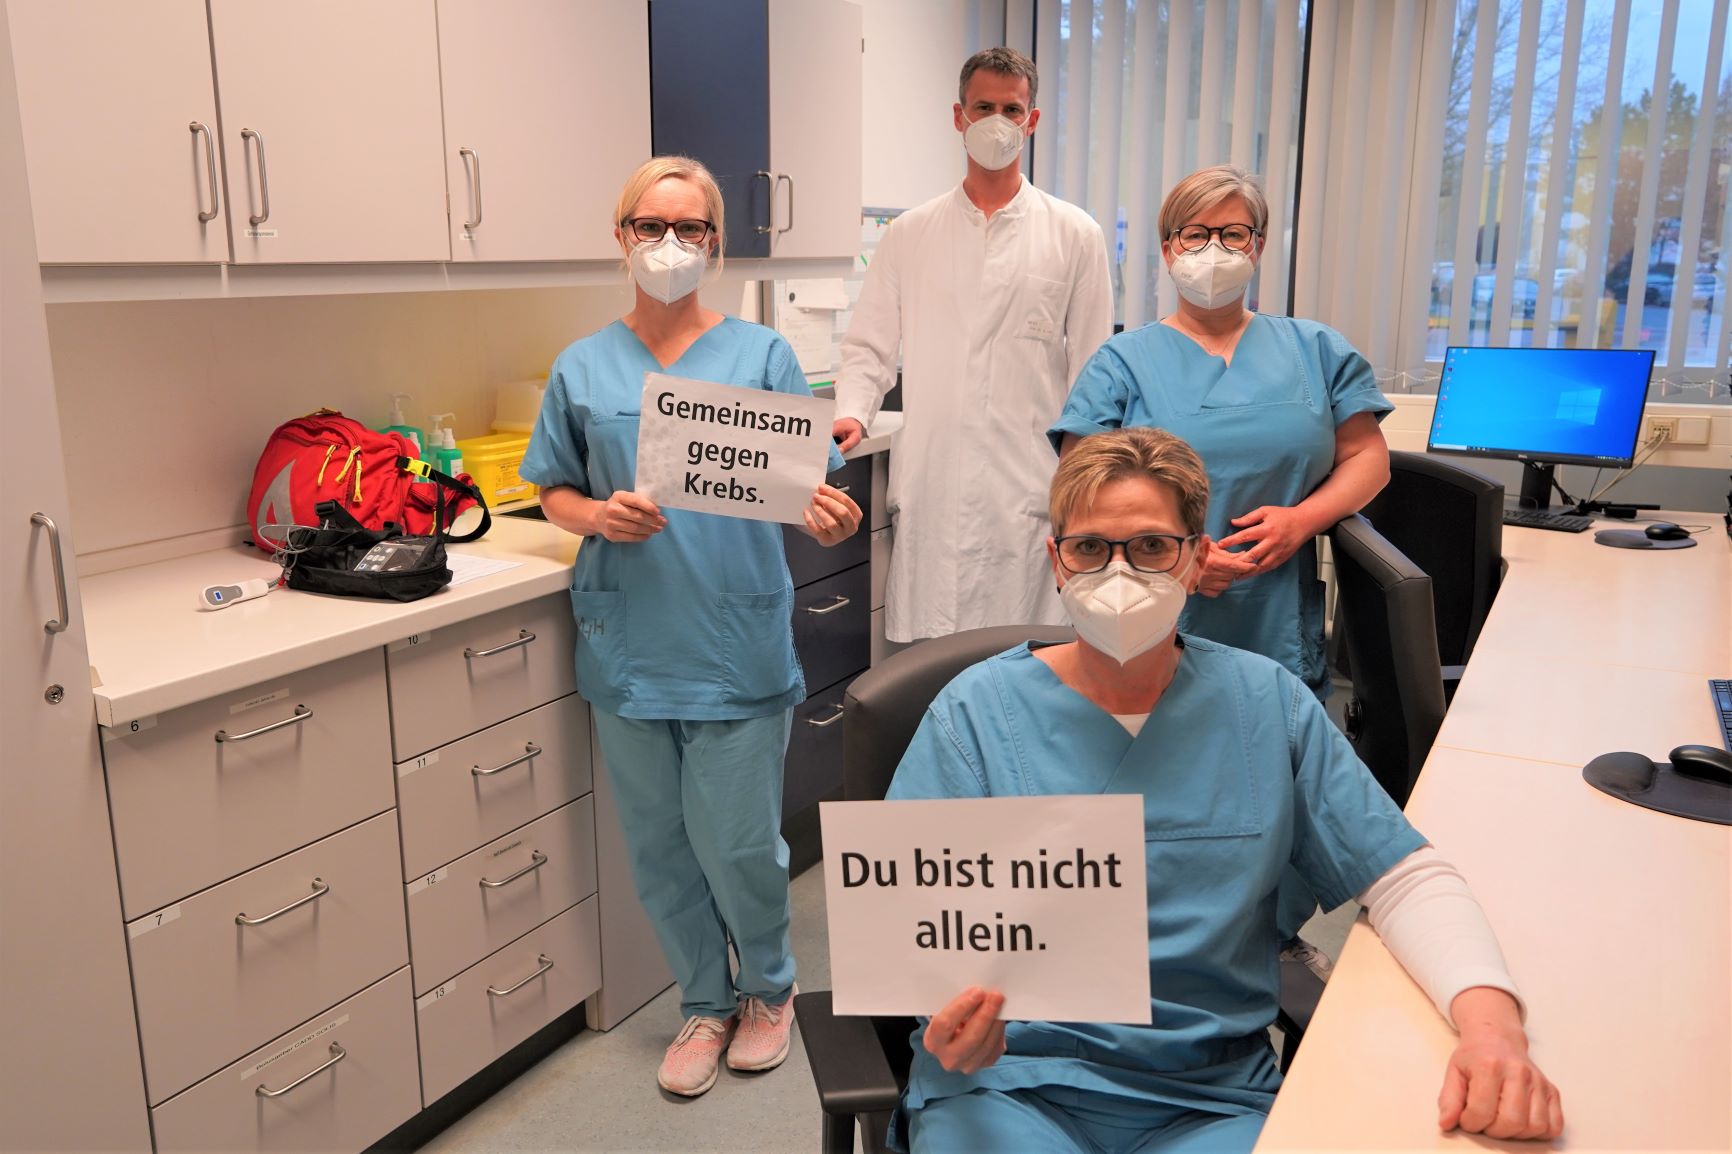 Vier Mitarbeiter vom Schmerzdienst im Stationsraum halten ein Schild, auf dem steht "Gemeinsam gegen Krebs. Du bist nicht allein."